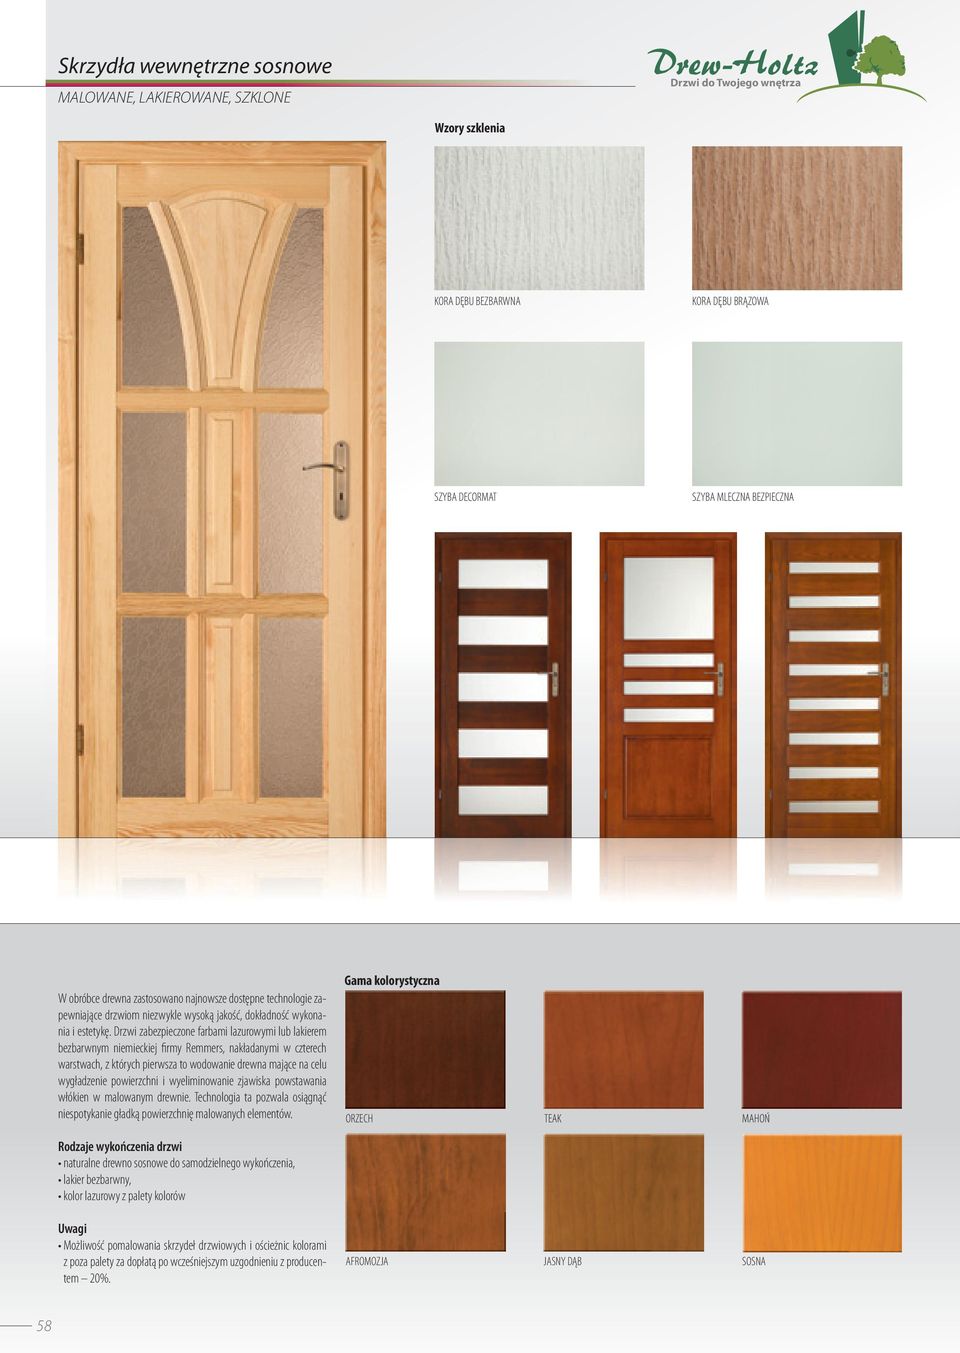 Drzwi zabezpieczone farbami lazurowymi lub lakierem bezbarwnym niemieckiej firmy Remmers, nakładanymi w czterech warstwach, z których pierwsza to wodowanie drewna mające na celu wygładzenie